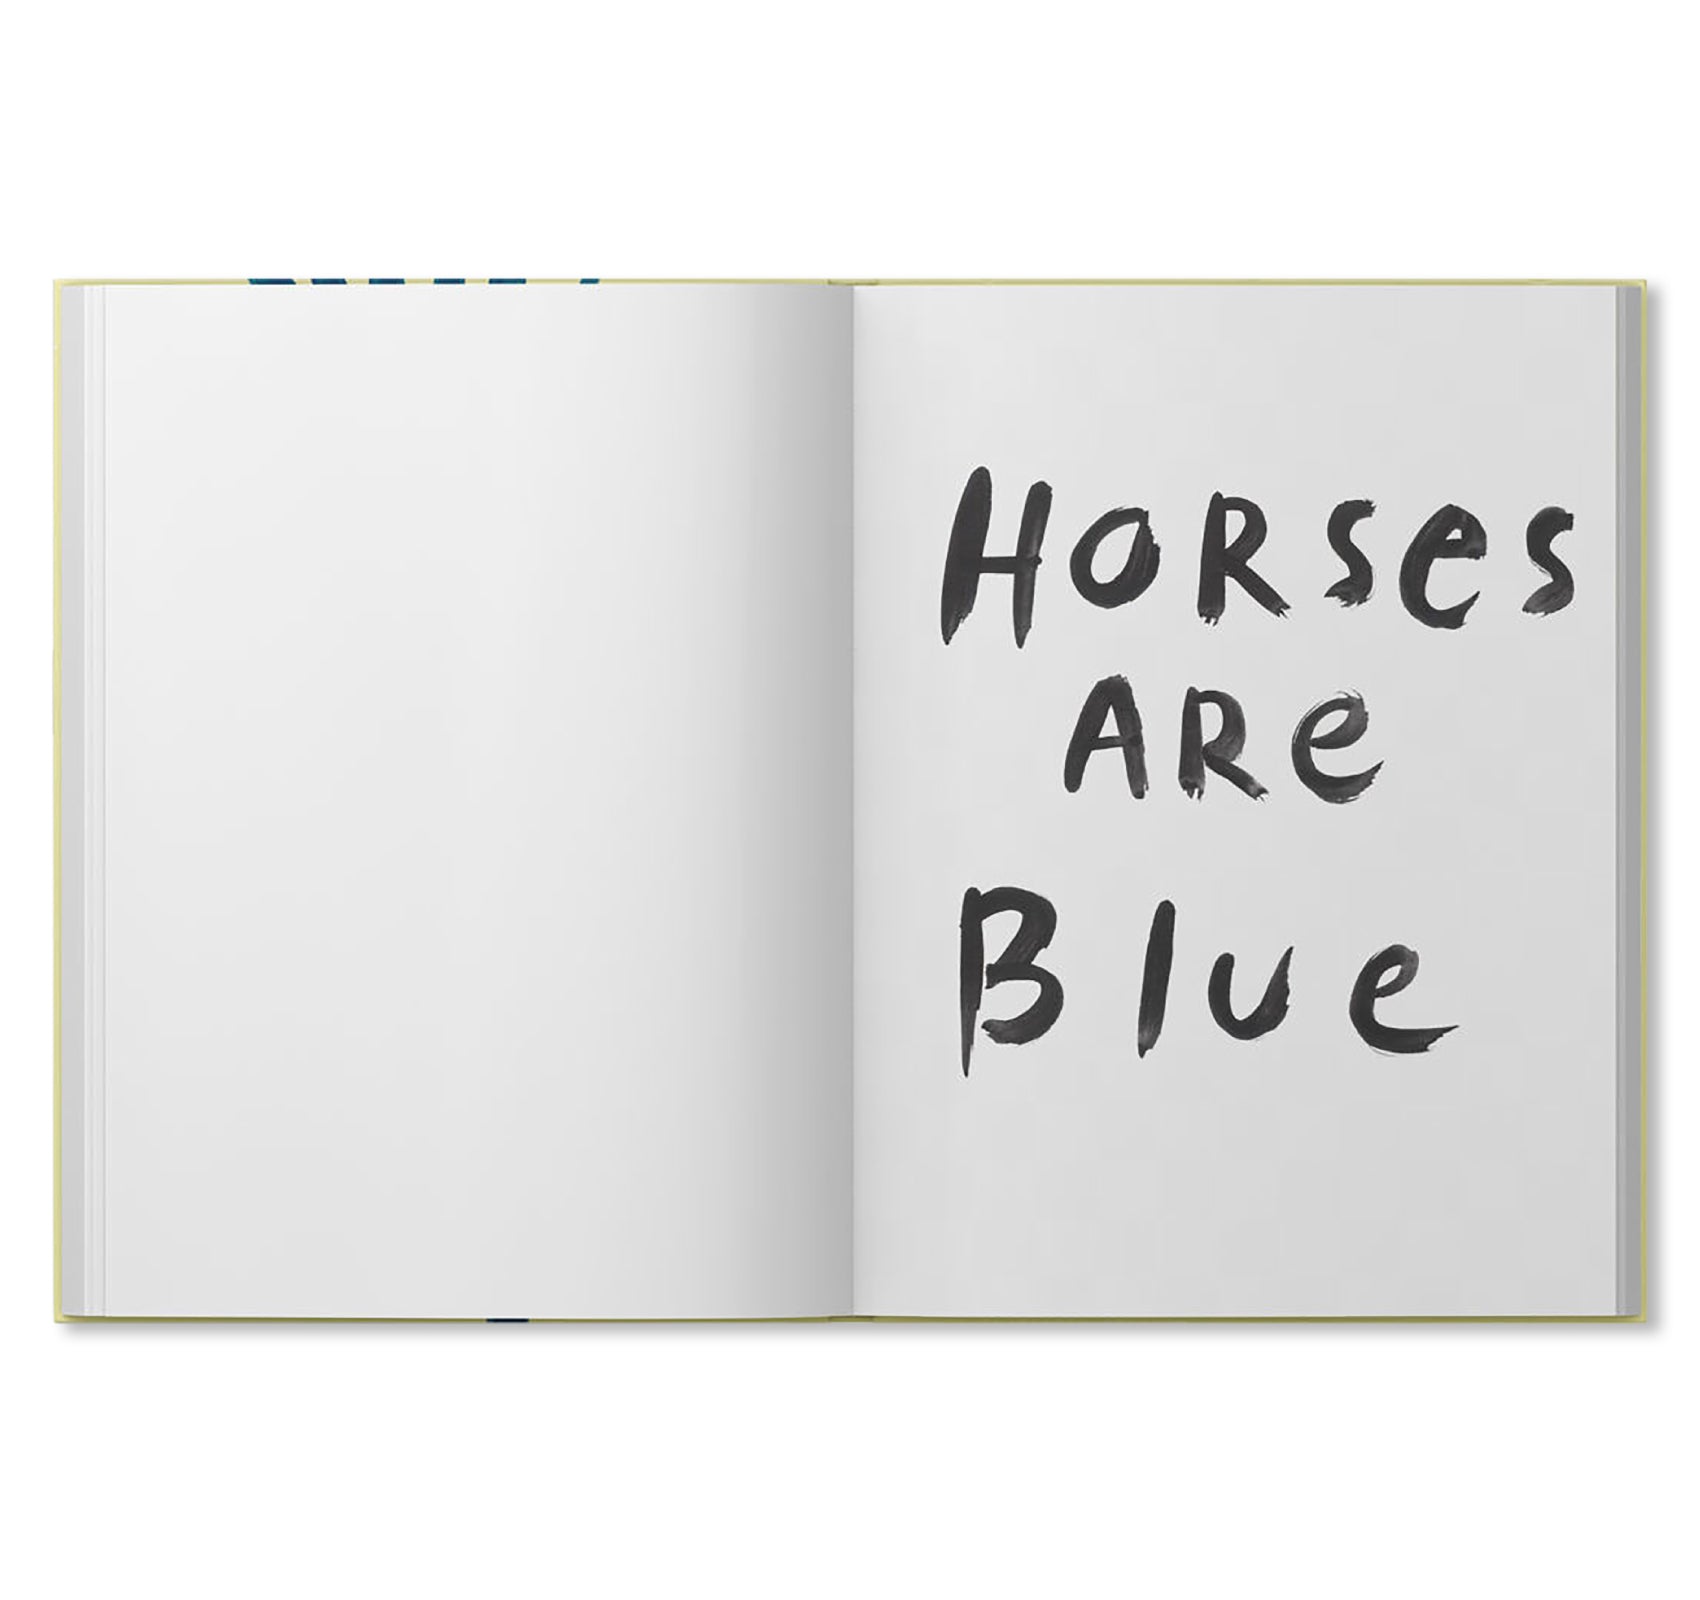 HORSES ARE BLUE by Iris de Moüy